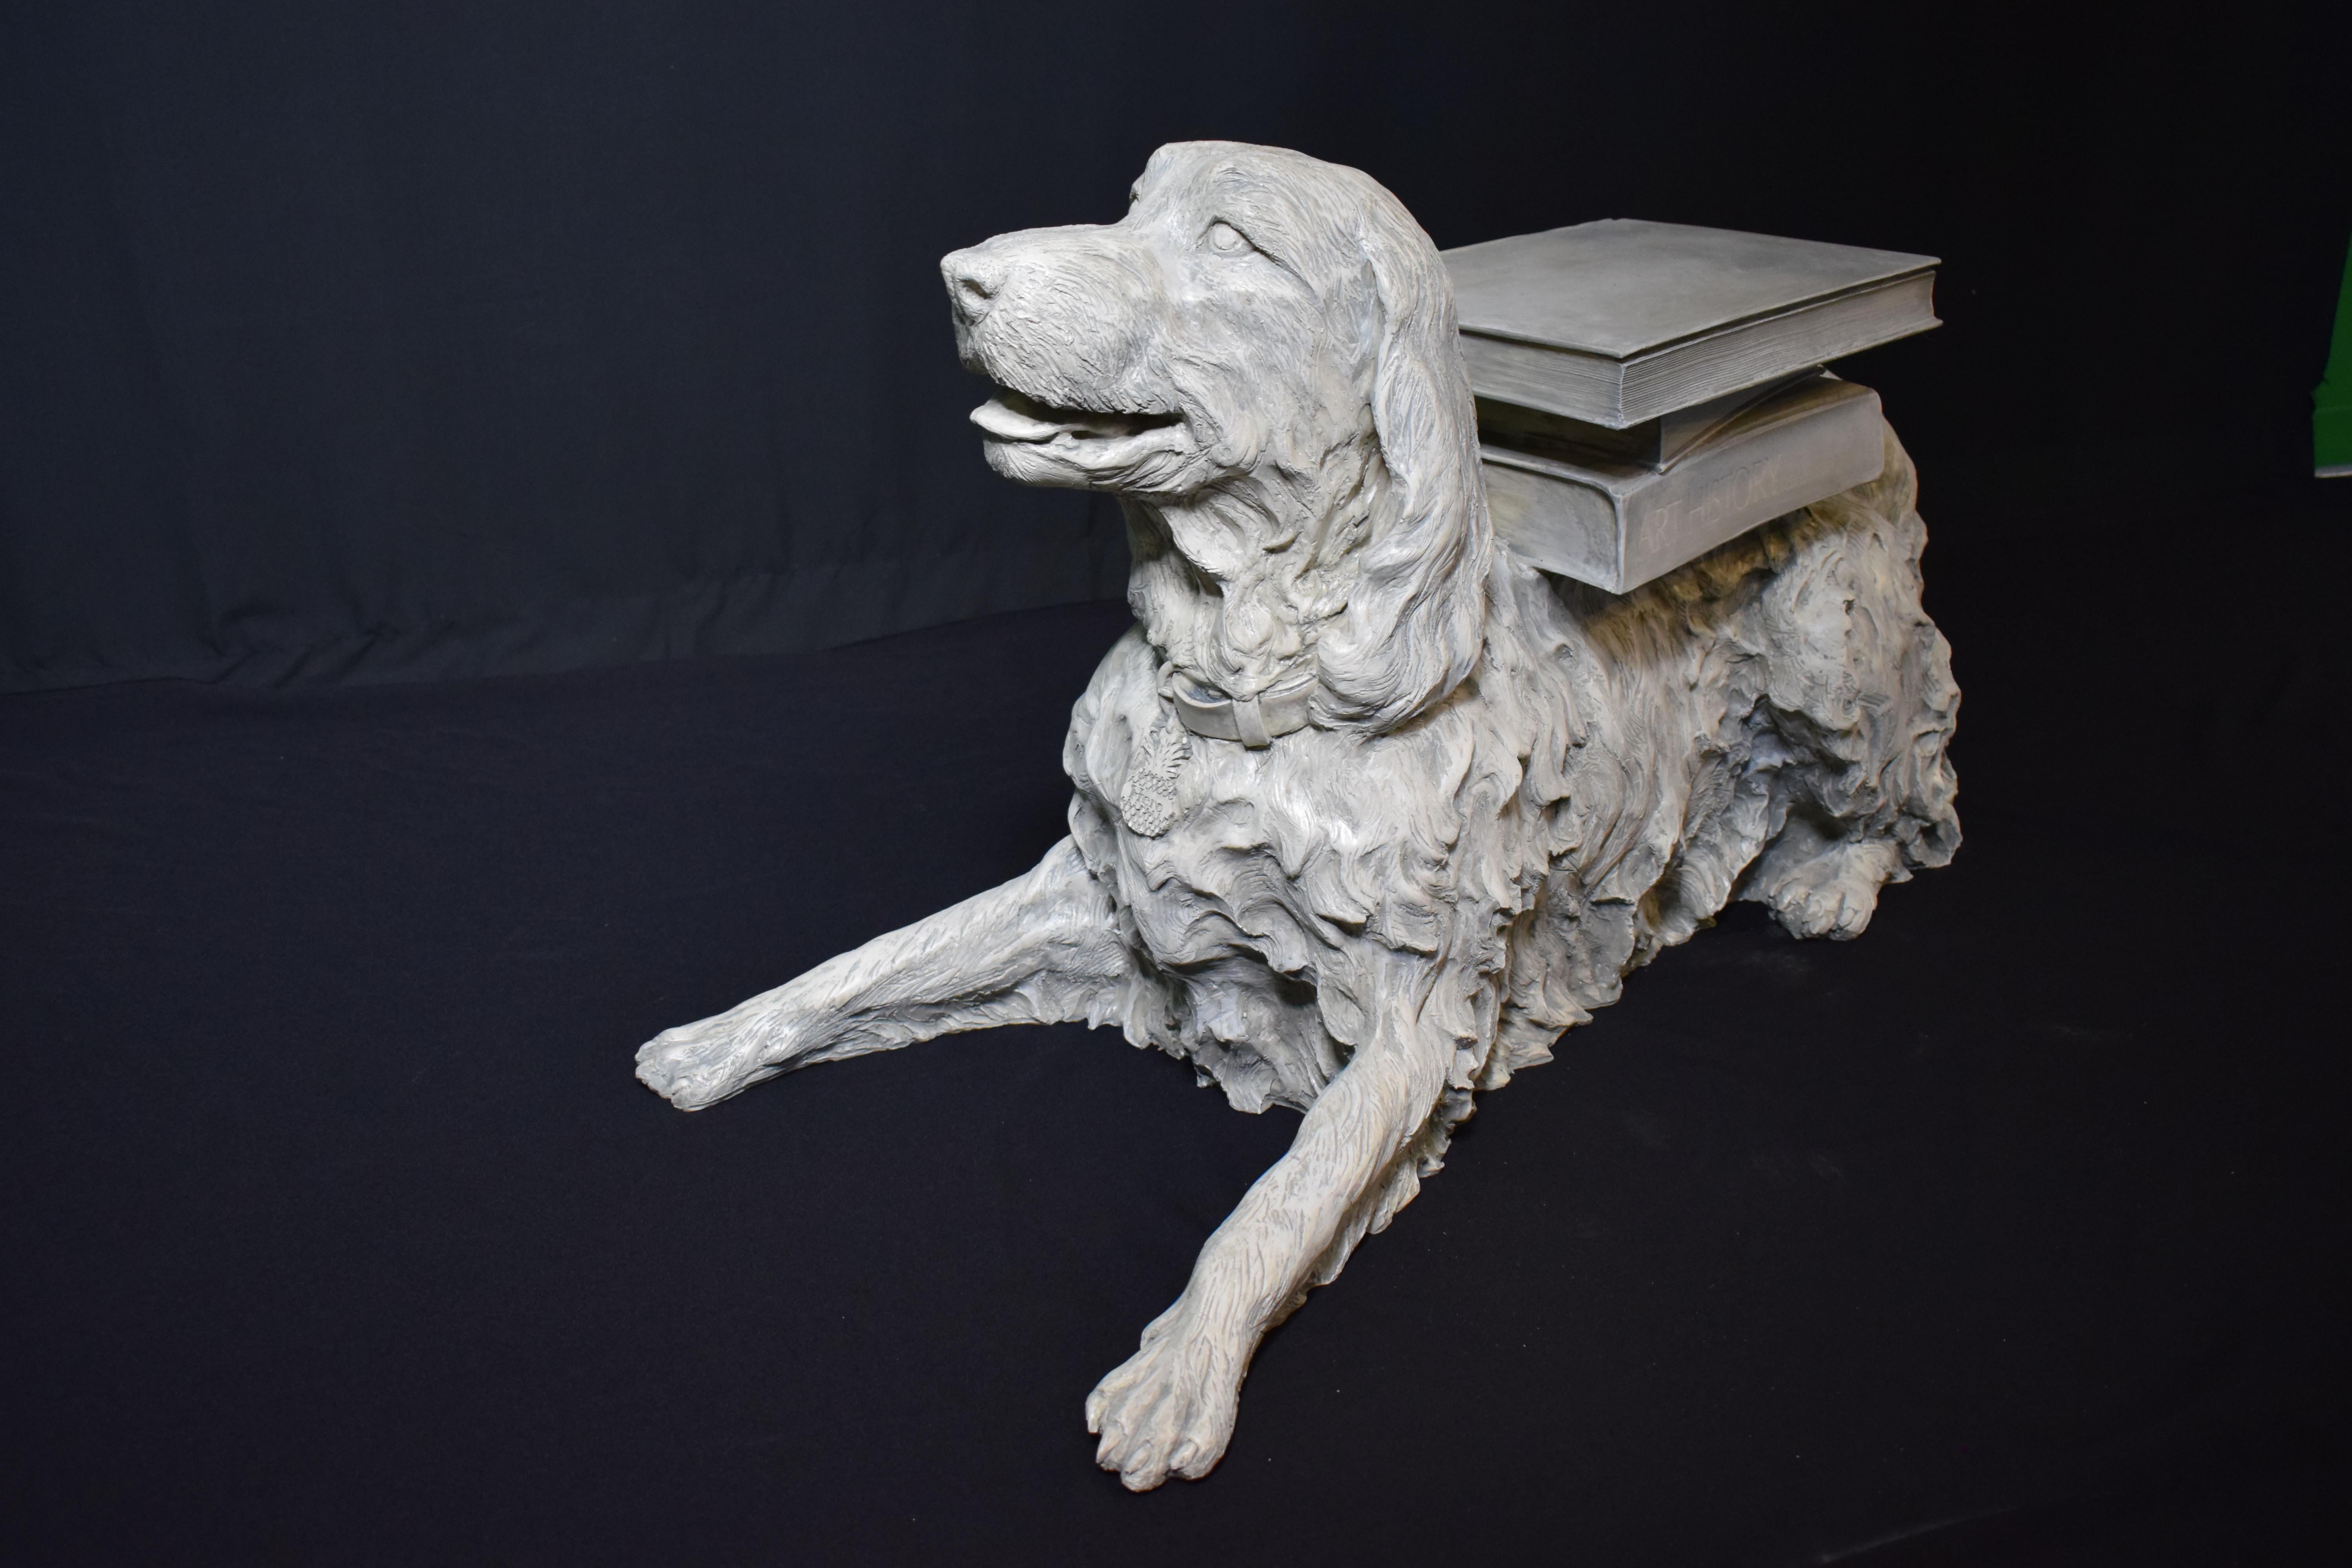 Sculpture pleine grandeur très décorative représentant un chien couché avec des livres sur le dos. Détail important.
Dimensions : Hauteur 22 1/2